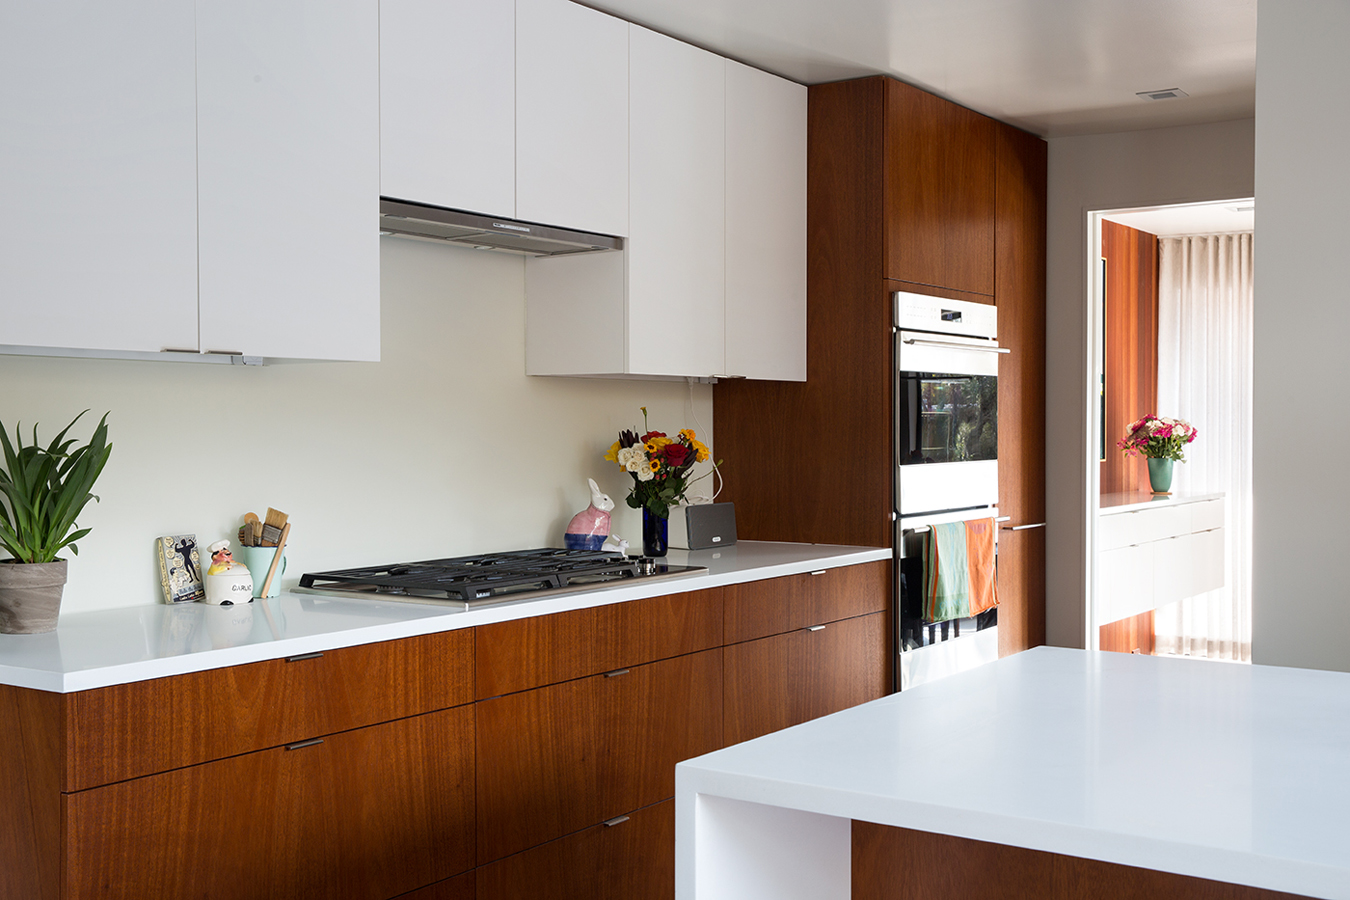 Eichler Kitchen Remodel: Fireclay Tiled Backsplash — Mid Century Modern  Interior Designer - Destination Eichler - San Francisco Bay Area Interior  Designer